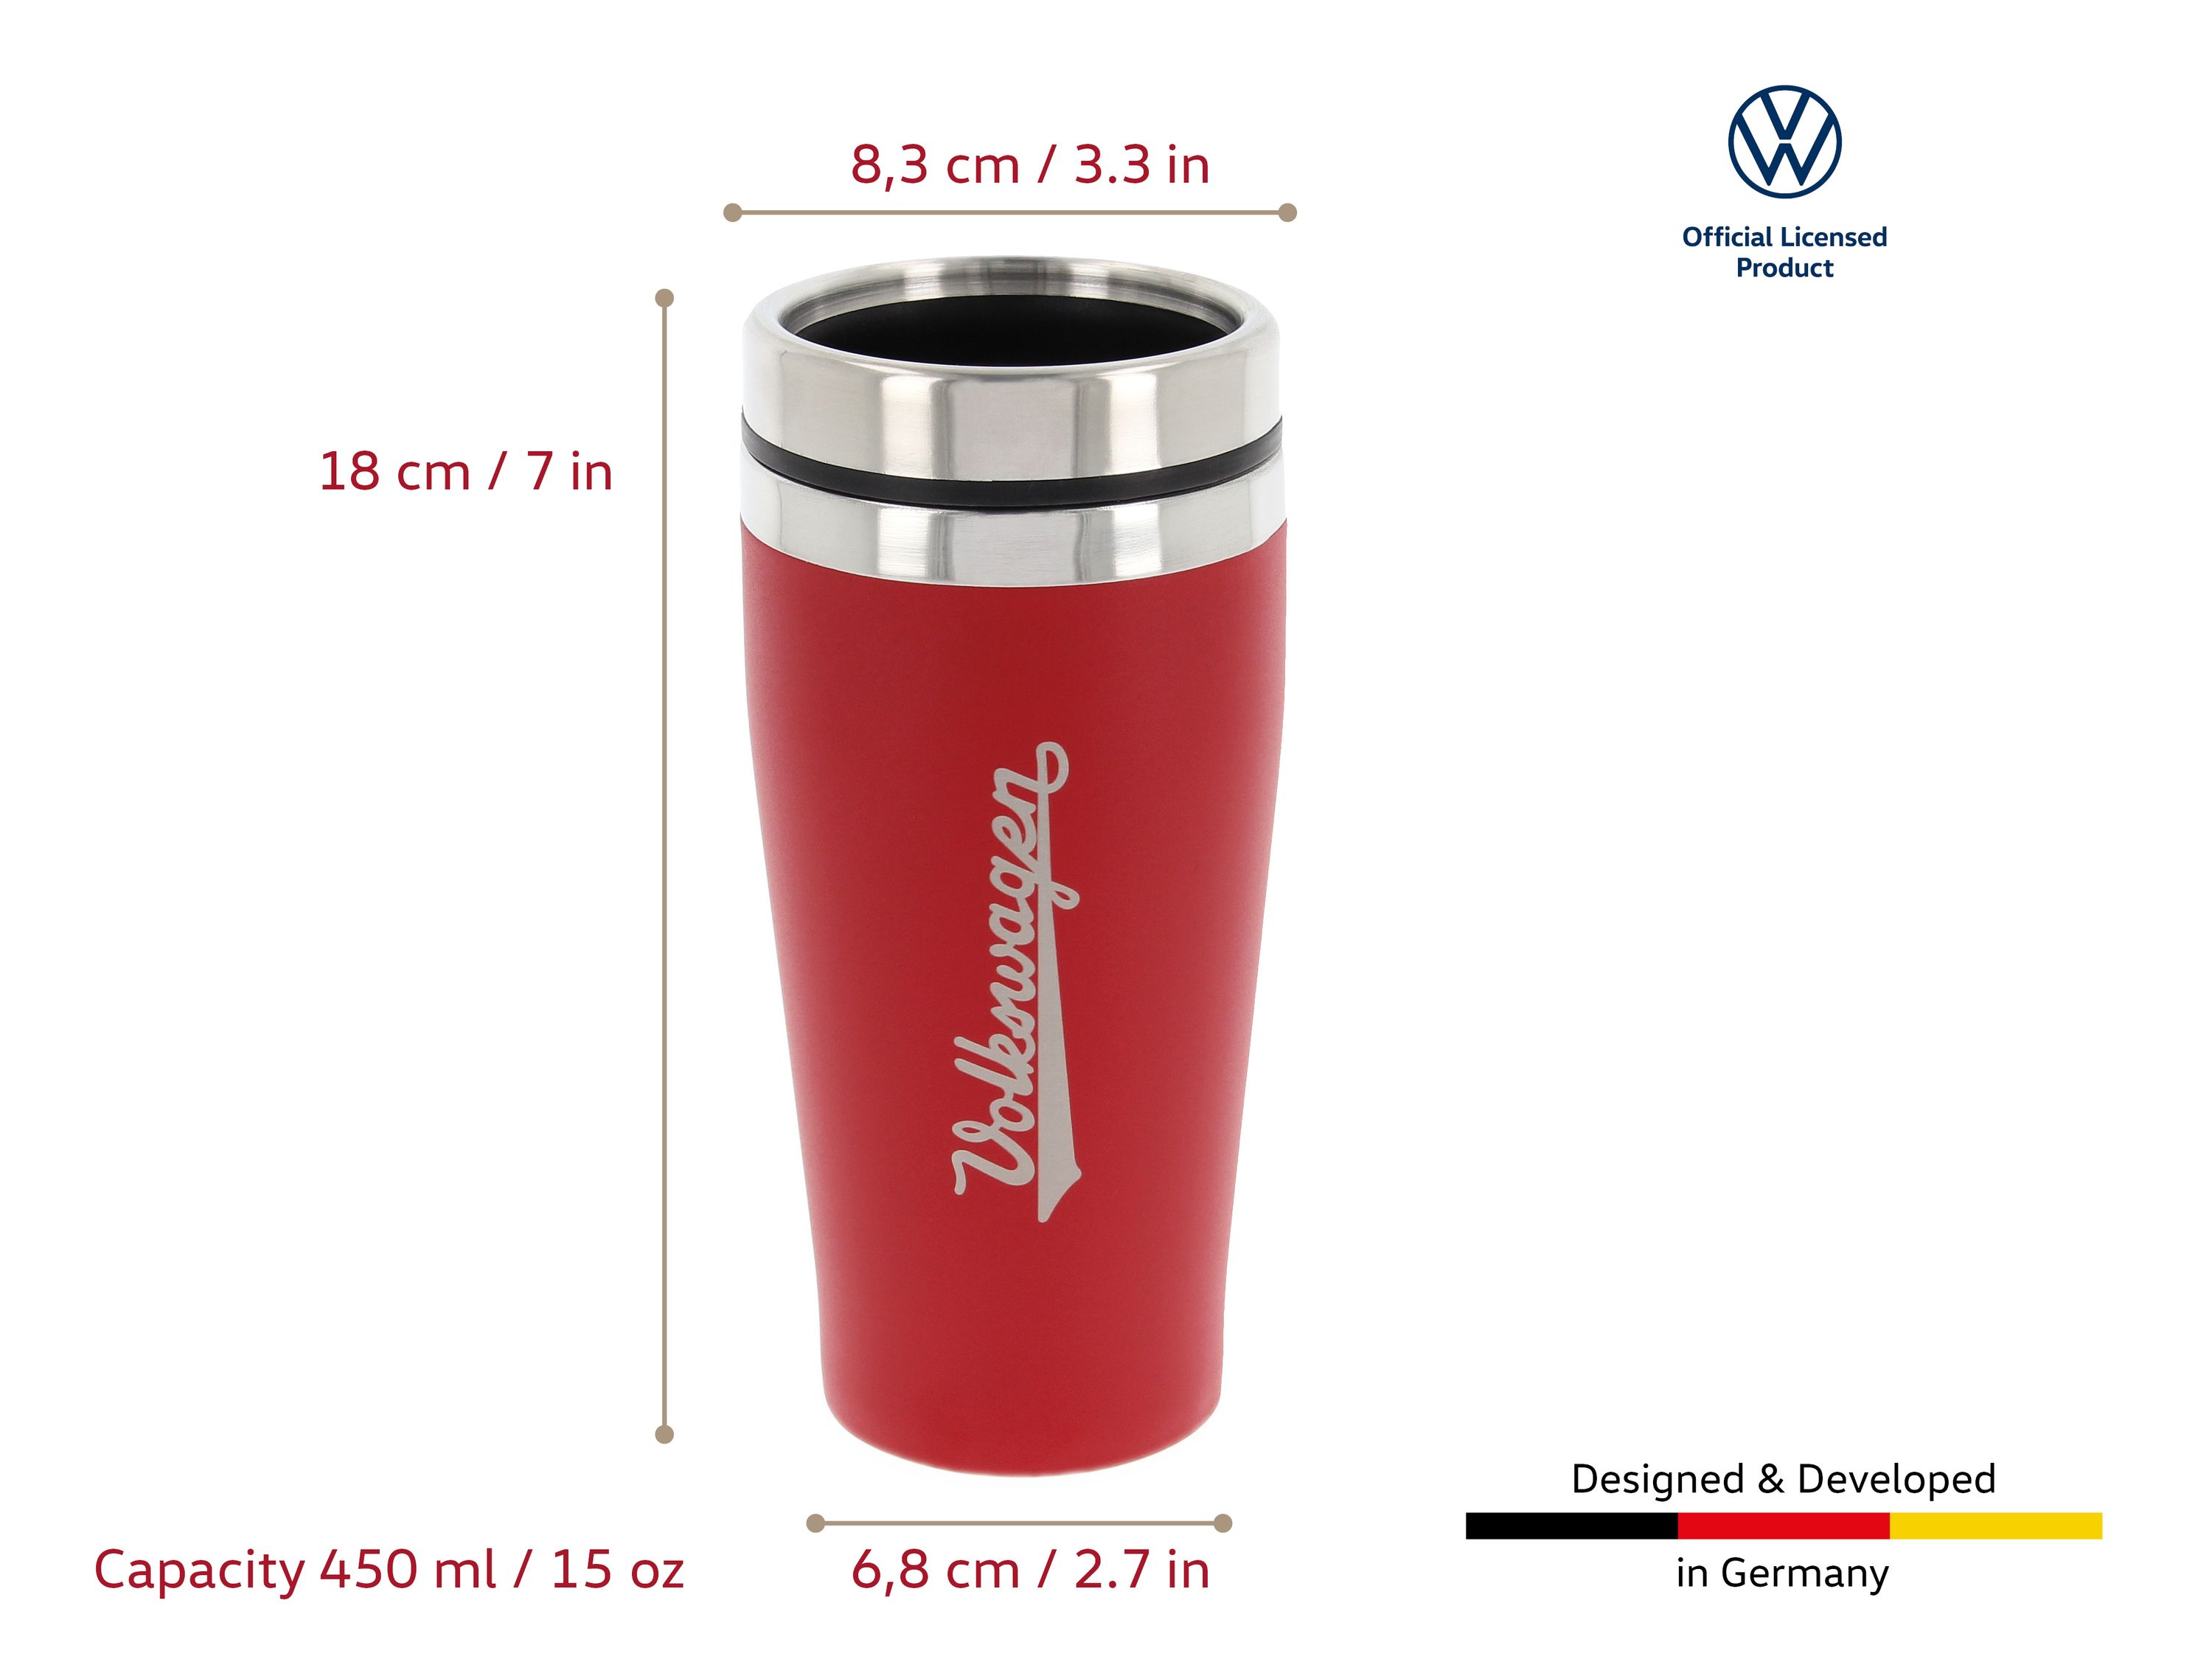 VOLKSWAGEN VW Gobelet thermos à double, acier inoxydable, 450ml - rouge